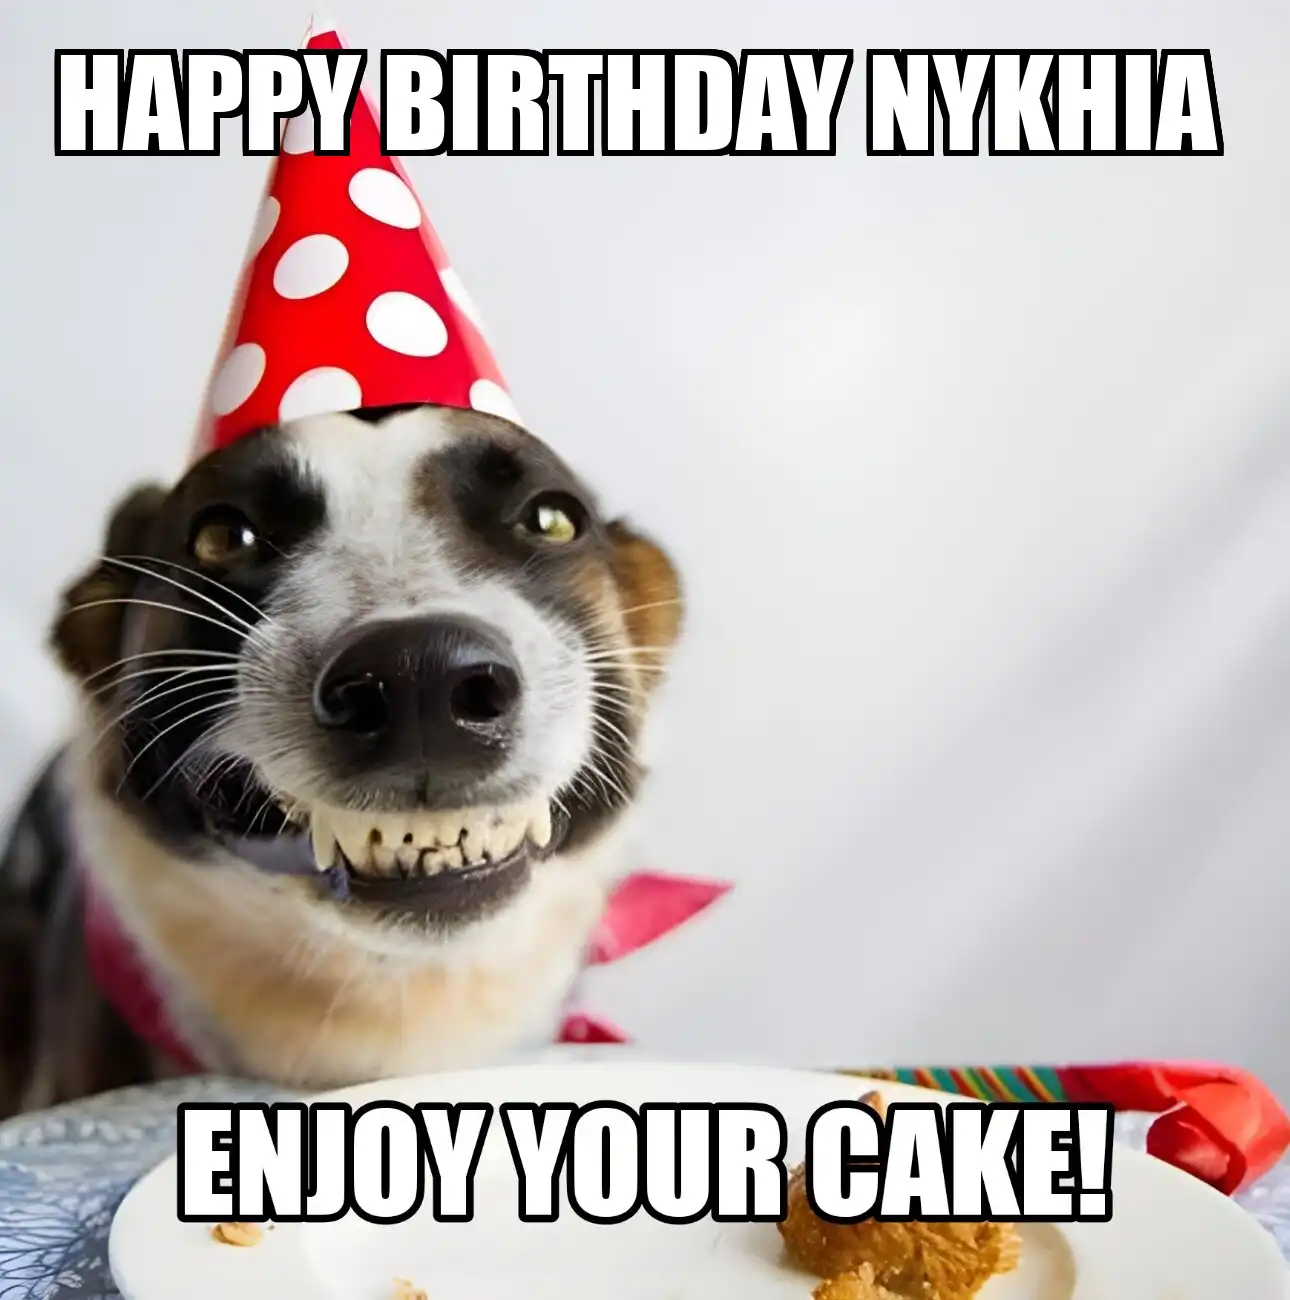 Happy Birthday Nykhia Enjoy Your Cake Dog Meme